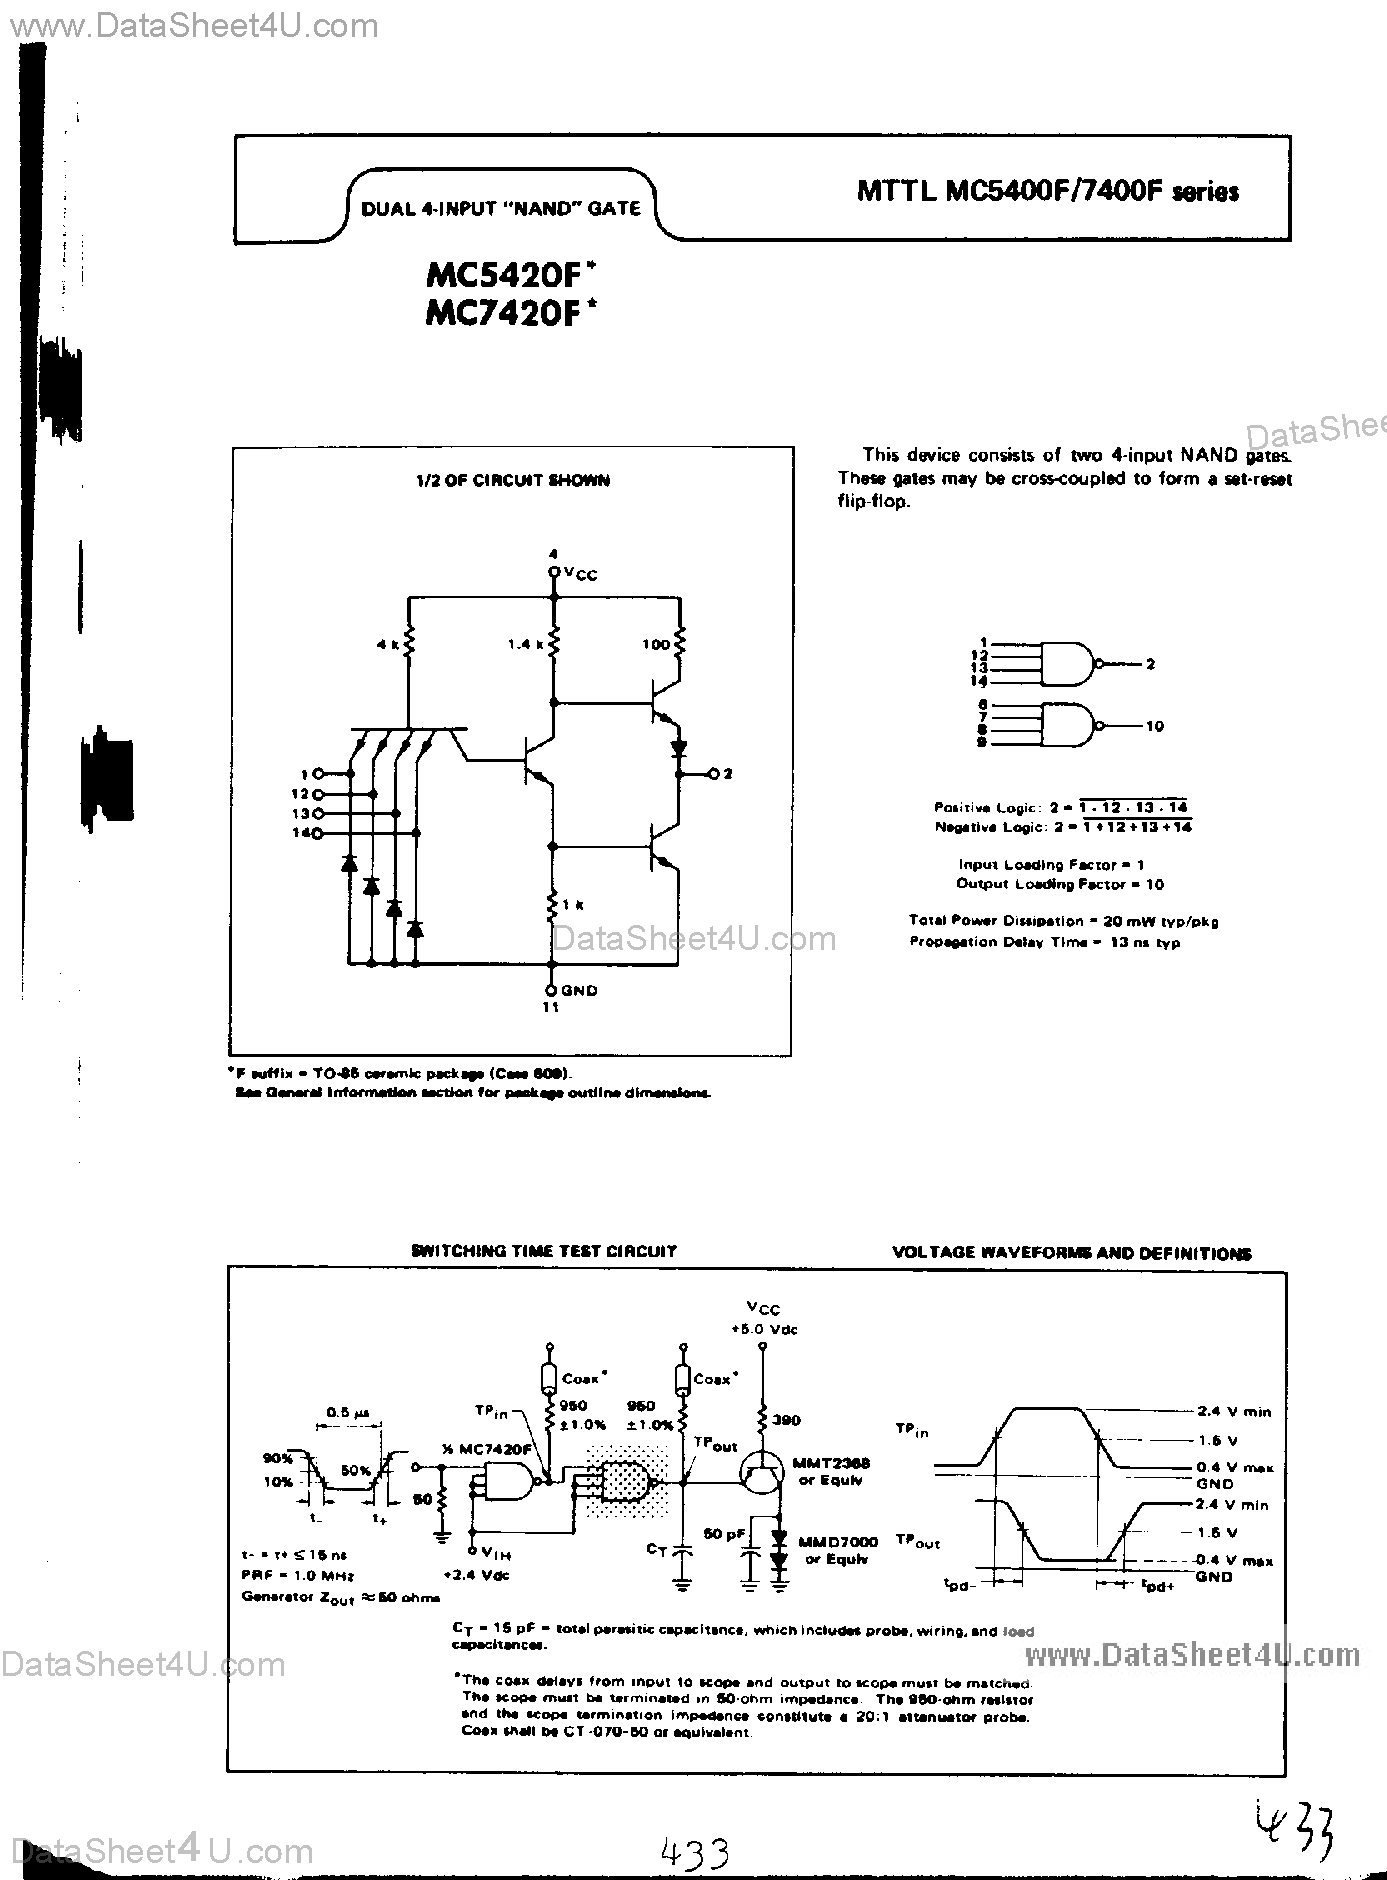 Даташит MC7420F - Dual 4-Input NAND Gate страница 1